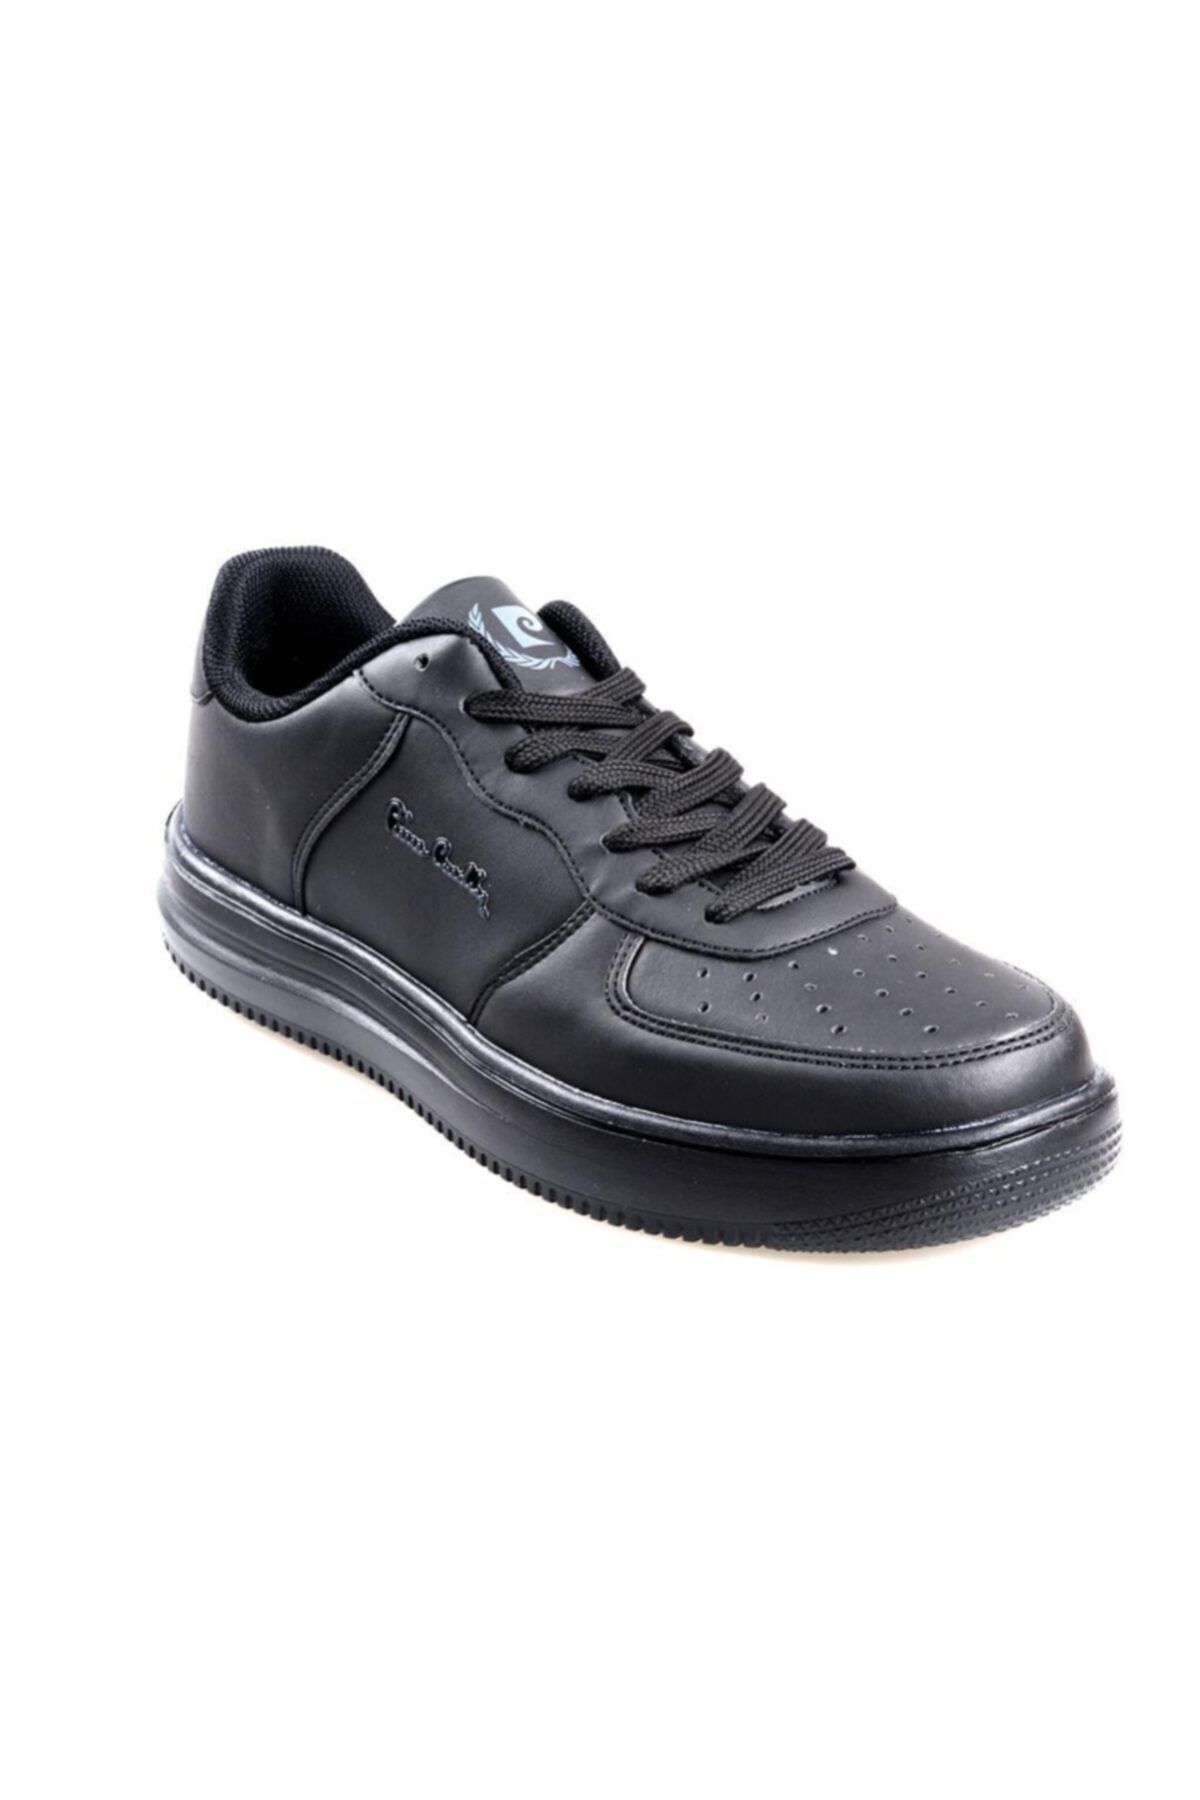 Pierre Cardin Kadın Siyah Sneaker Spor Ayakkabı Pc-10148